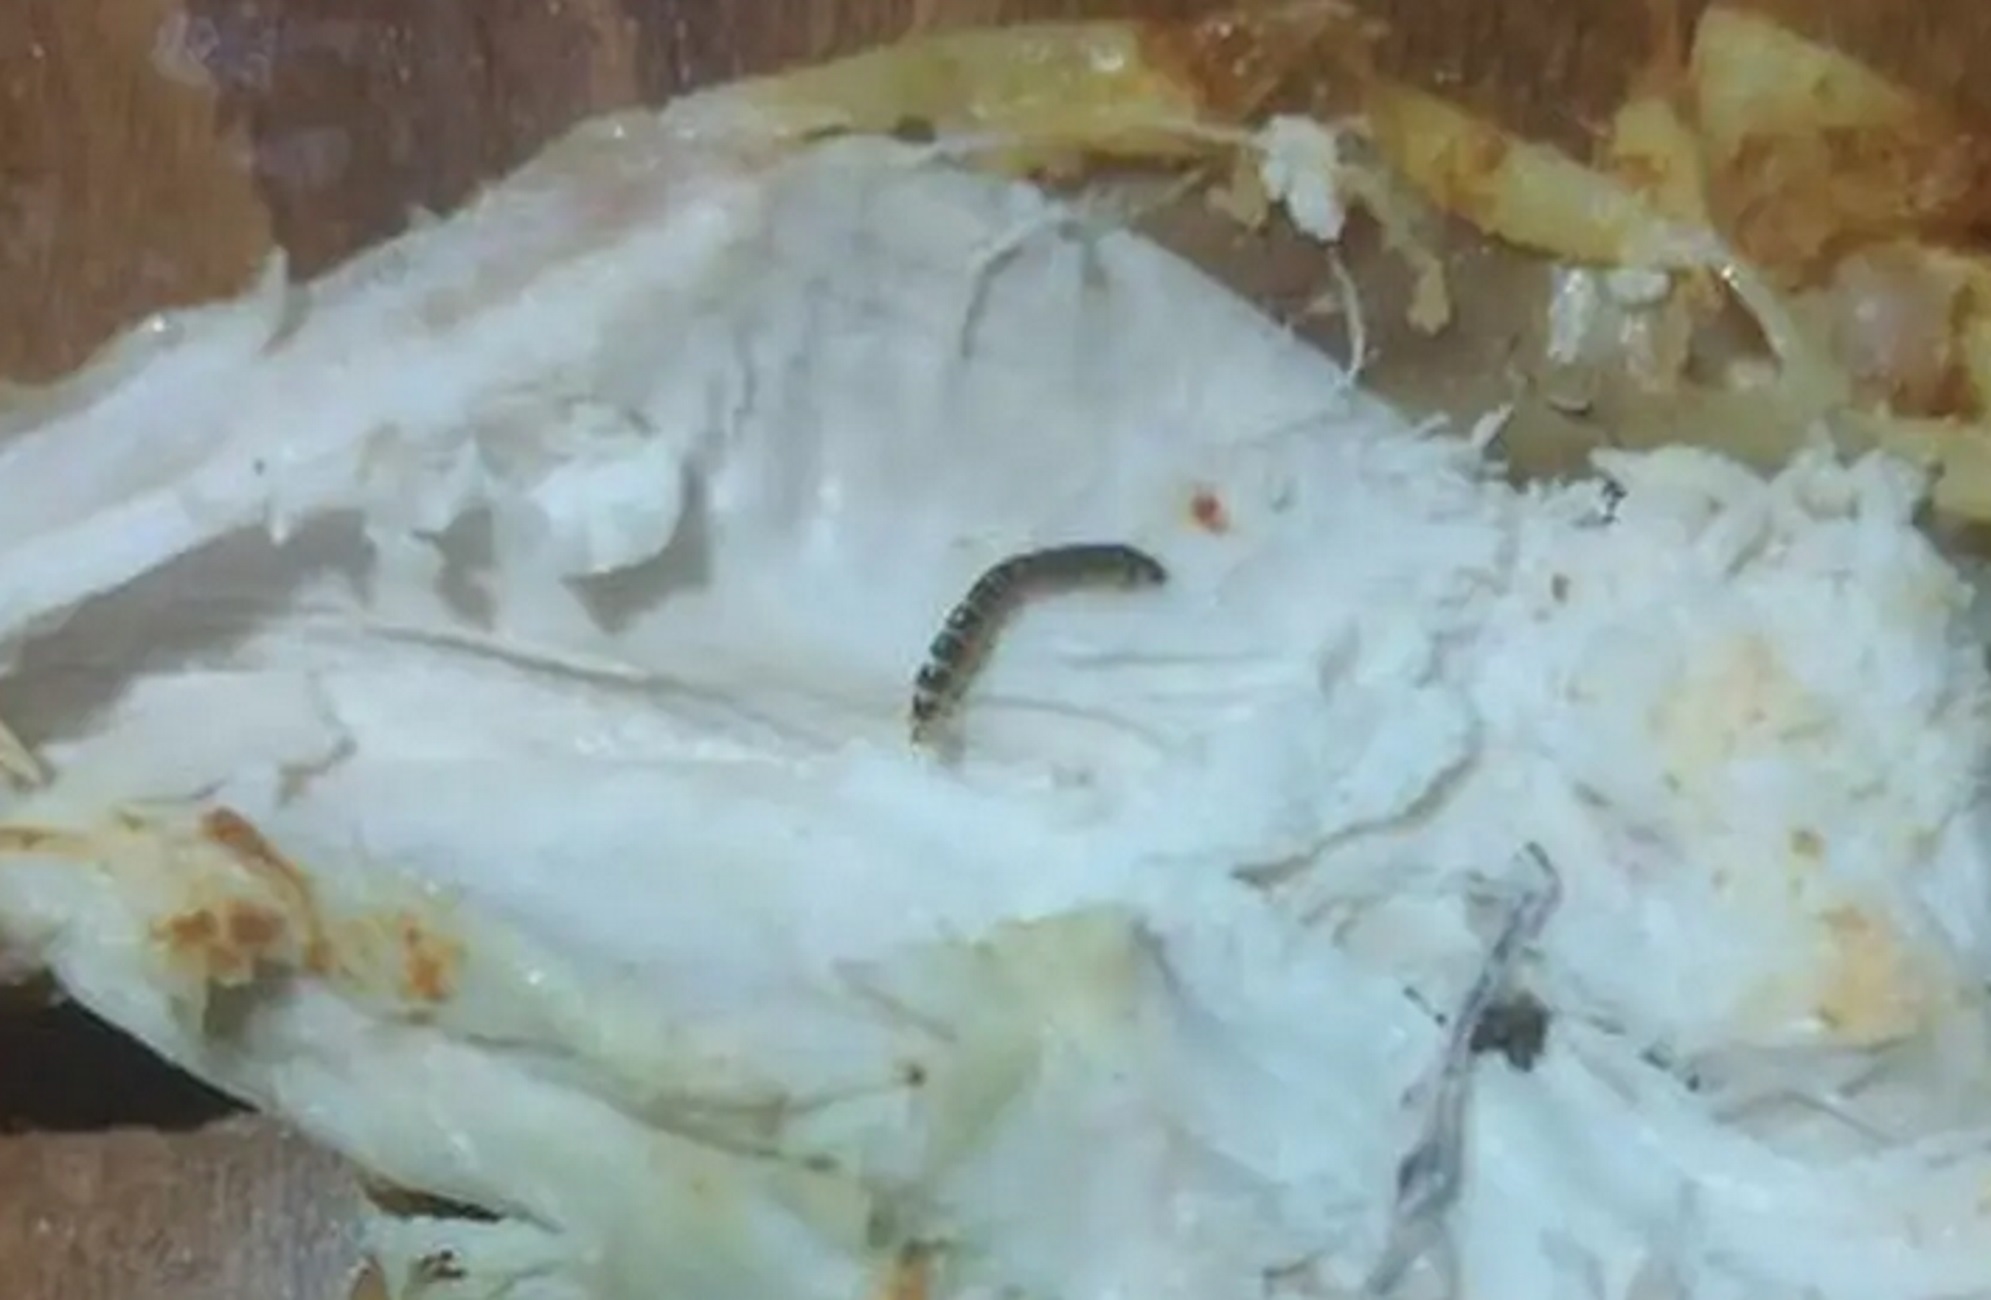 Χανιά: Καταγγέλλει πως βρήκε σκουλήκια μέσα σε αυτό το κοτόπουλο που αγόρασε από σούπερ μάρκετ